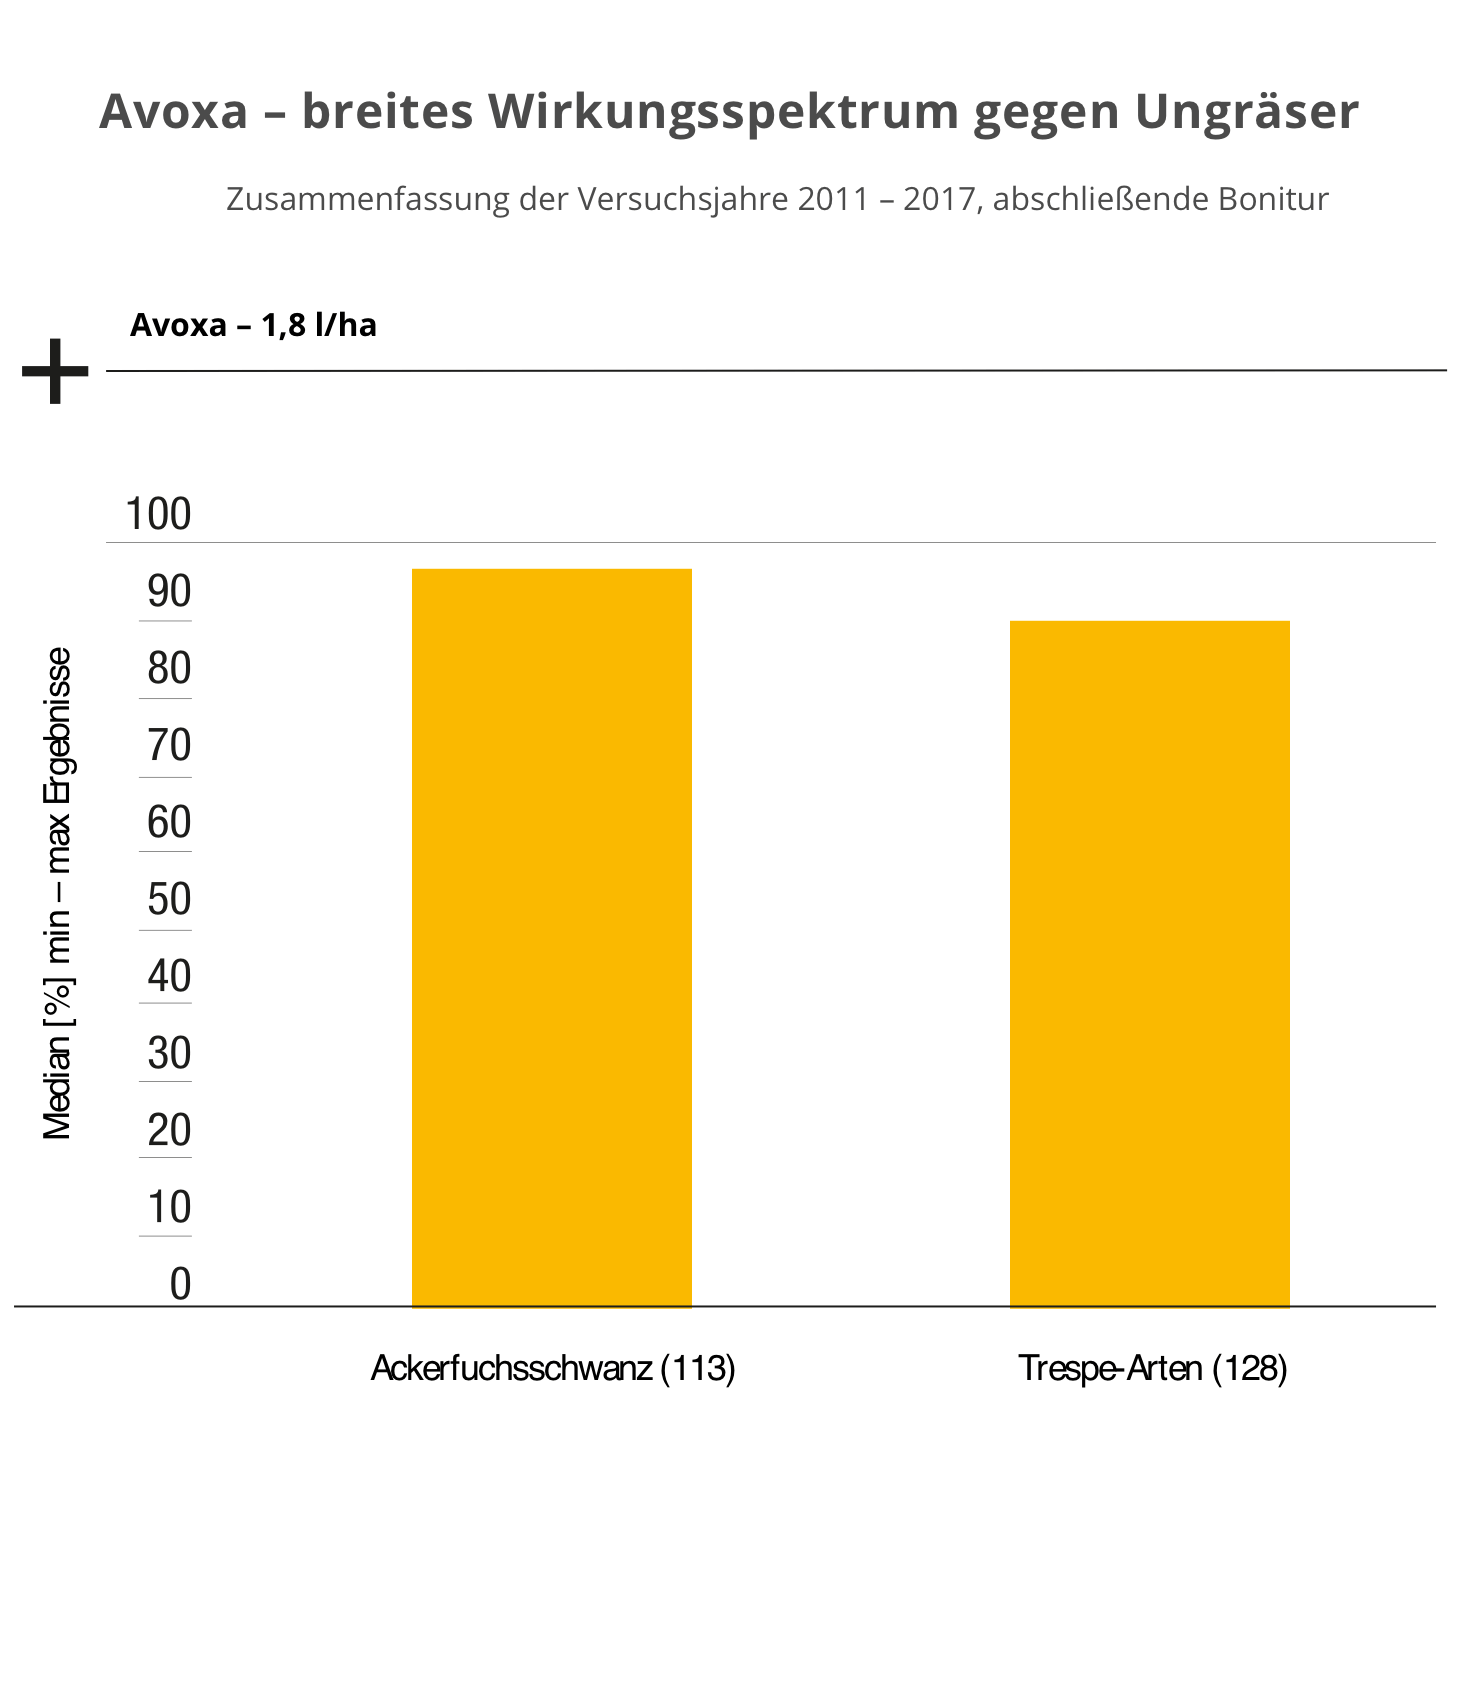 Avoxa - breites Wirkungsspektrum gegen Ungräser; Zusammenfassung der Versuchsjahre 2011 - 2017, abschließende Bonitur